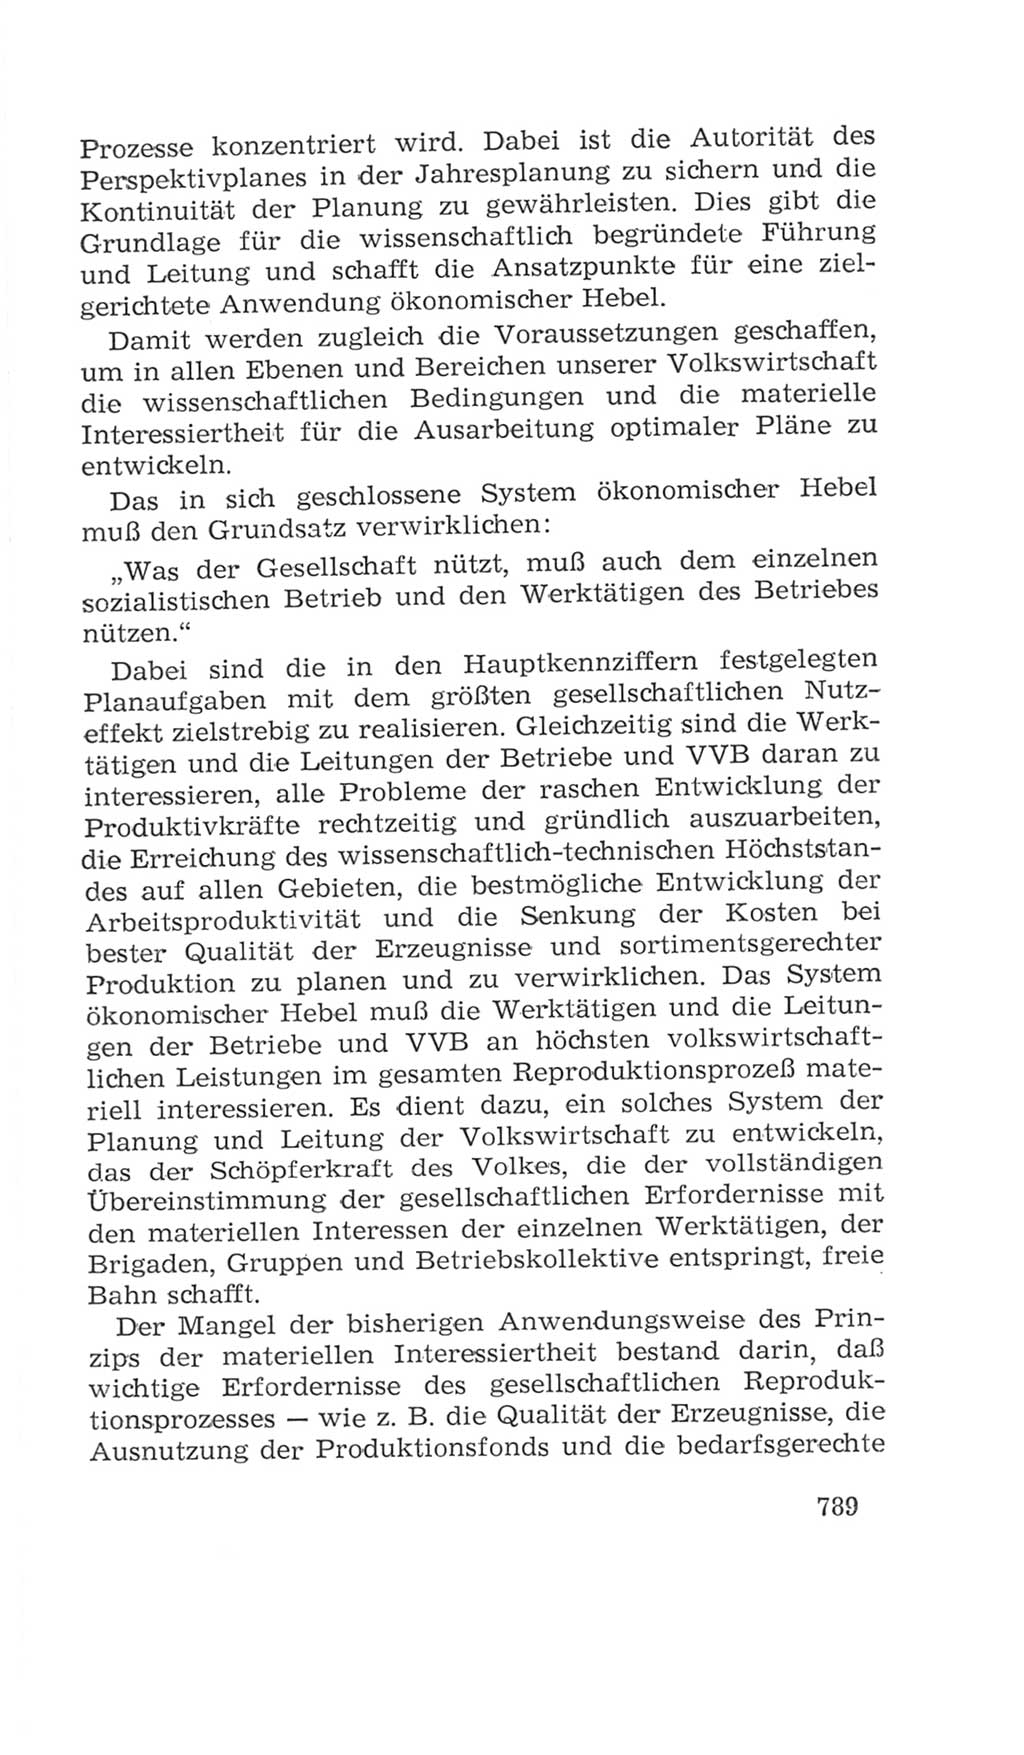 Volkskammer (VK) der Deutschen Demokratischen Republik (DDR), 4. Wahlperiode 1963-1967, Seite 789 (VK. DDR 4. WP. 1963-1967, S. 789)